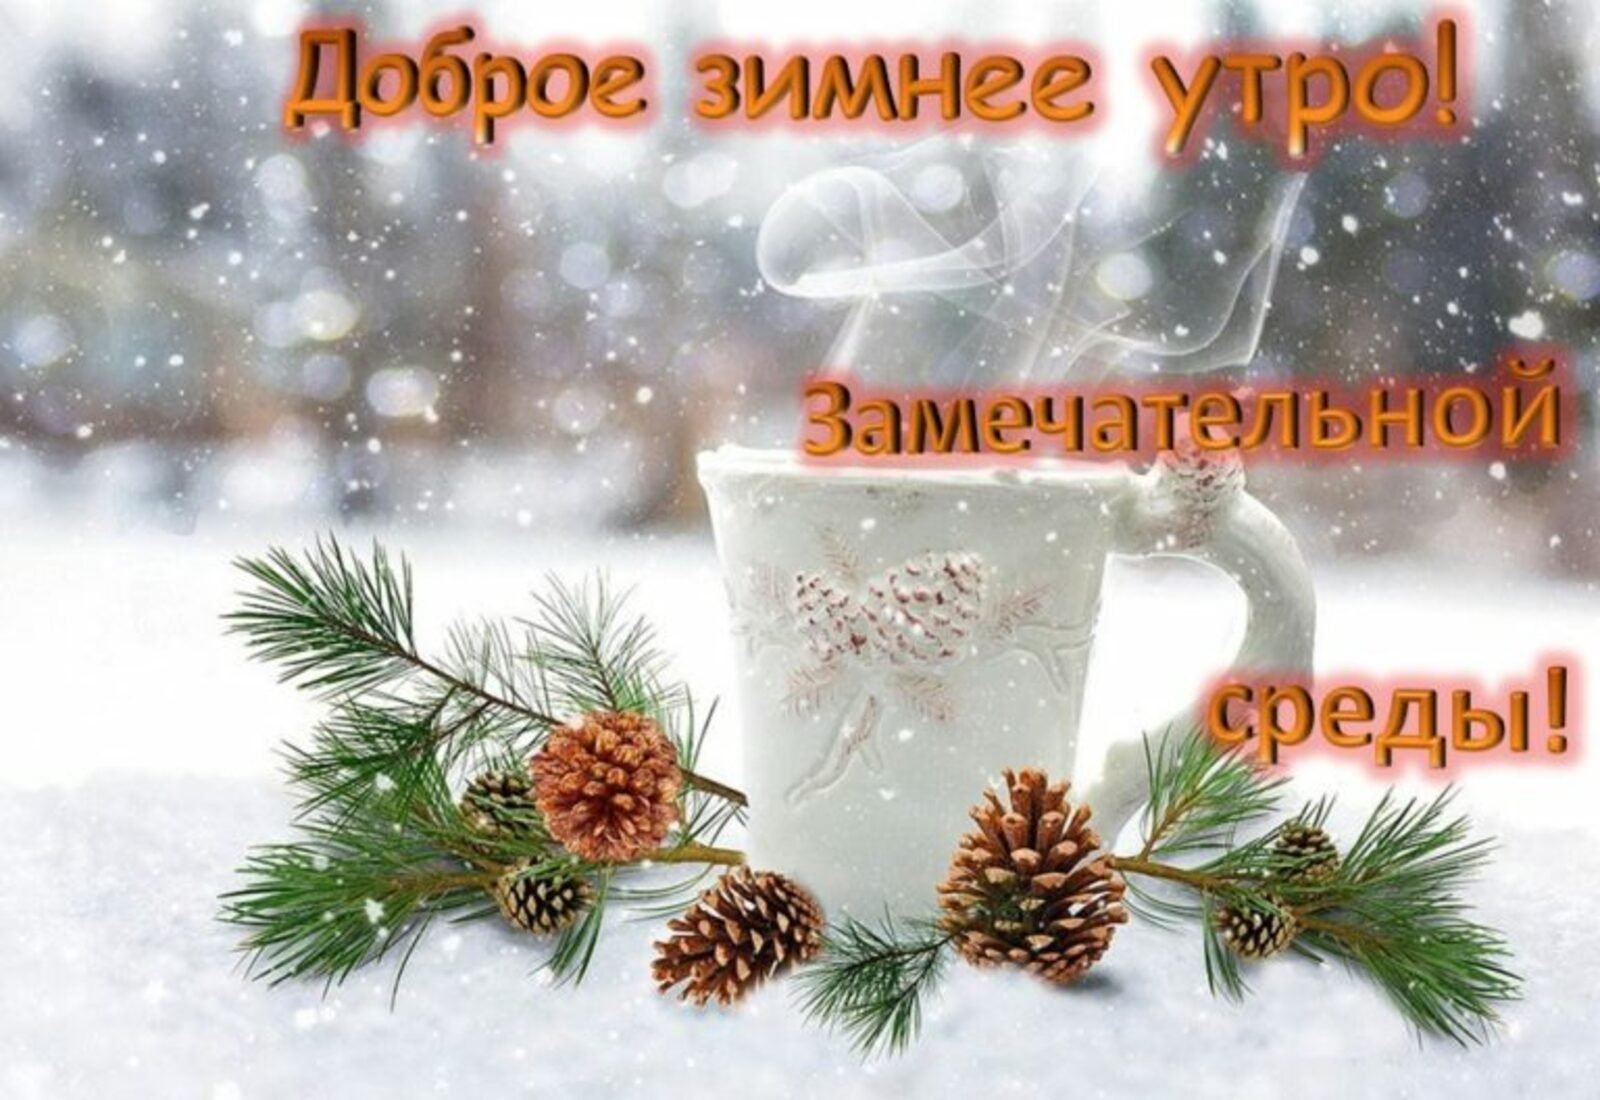 С добрым утром декабря. Доброе зимнее утро. Доброе зимнее утро среды. С добрым зимним утром СПЕДВ. С добрым зимним утром среды.